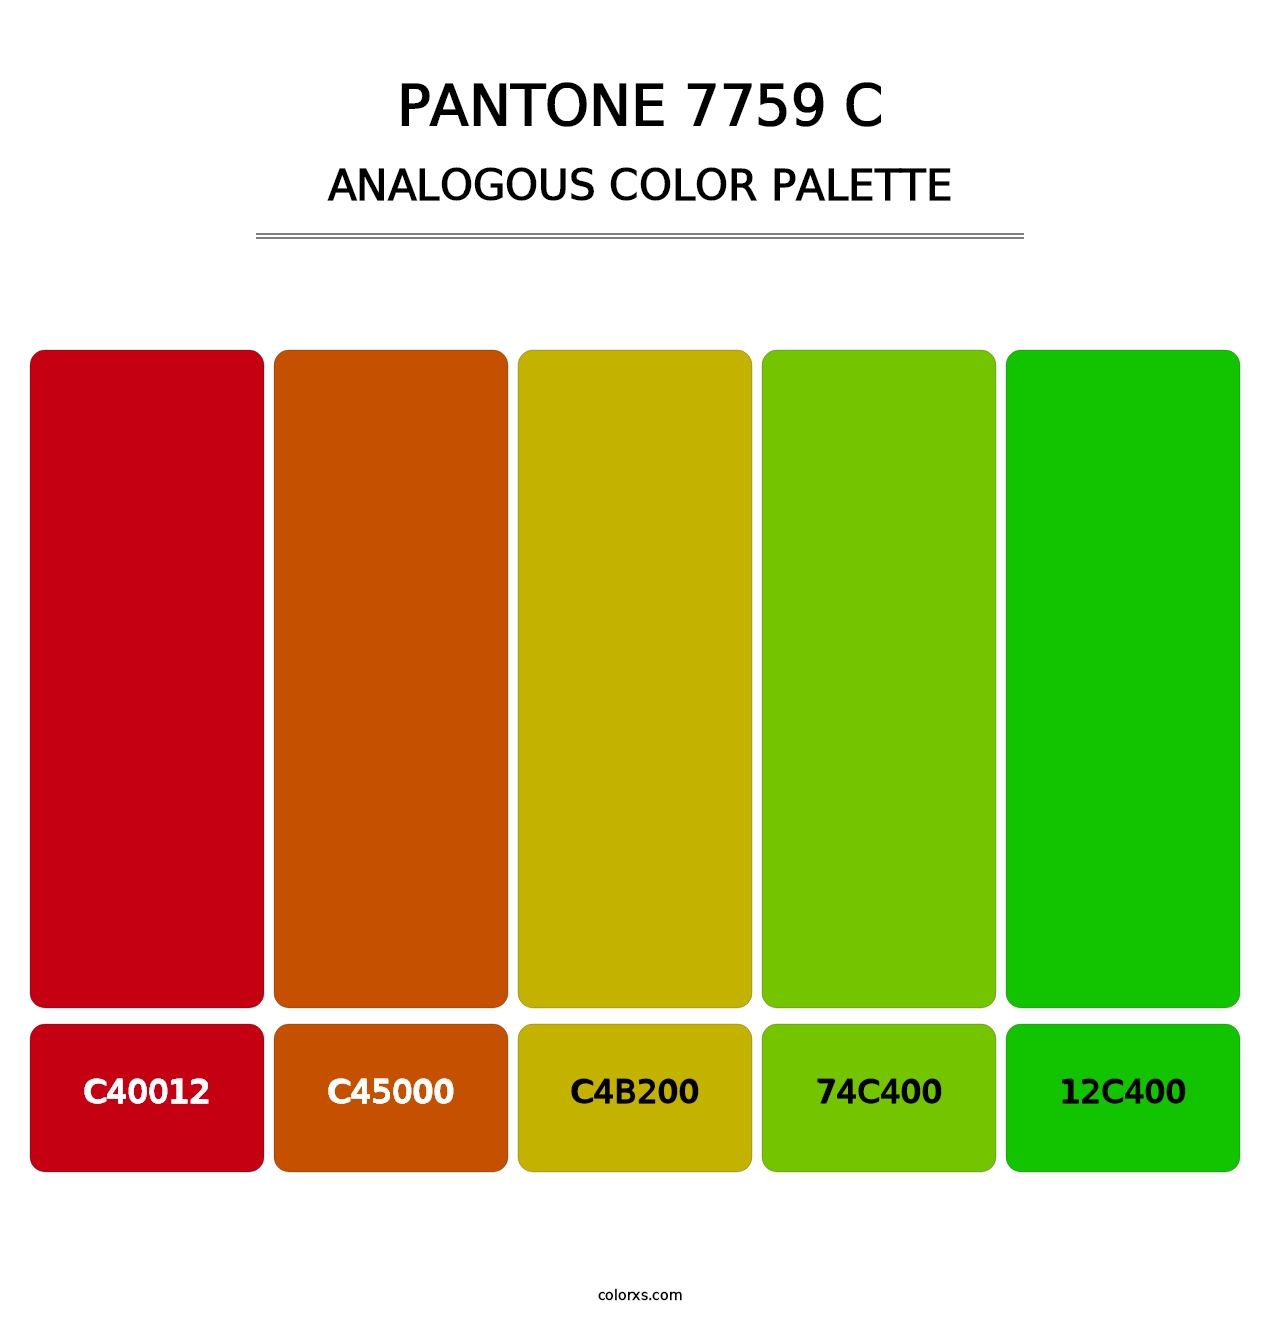 PANTONE 7759 C - Analogous Color Palette